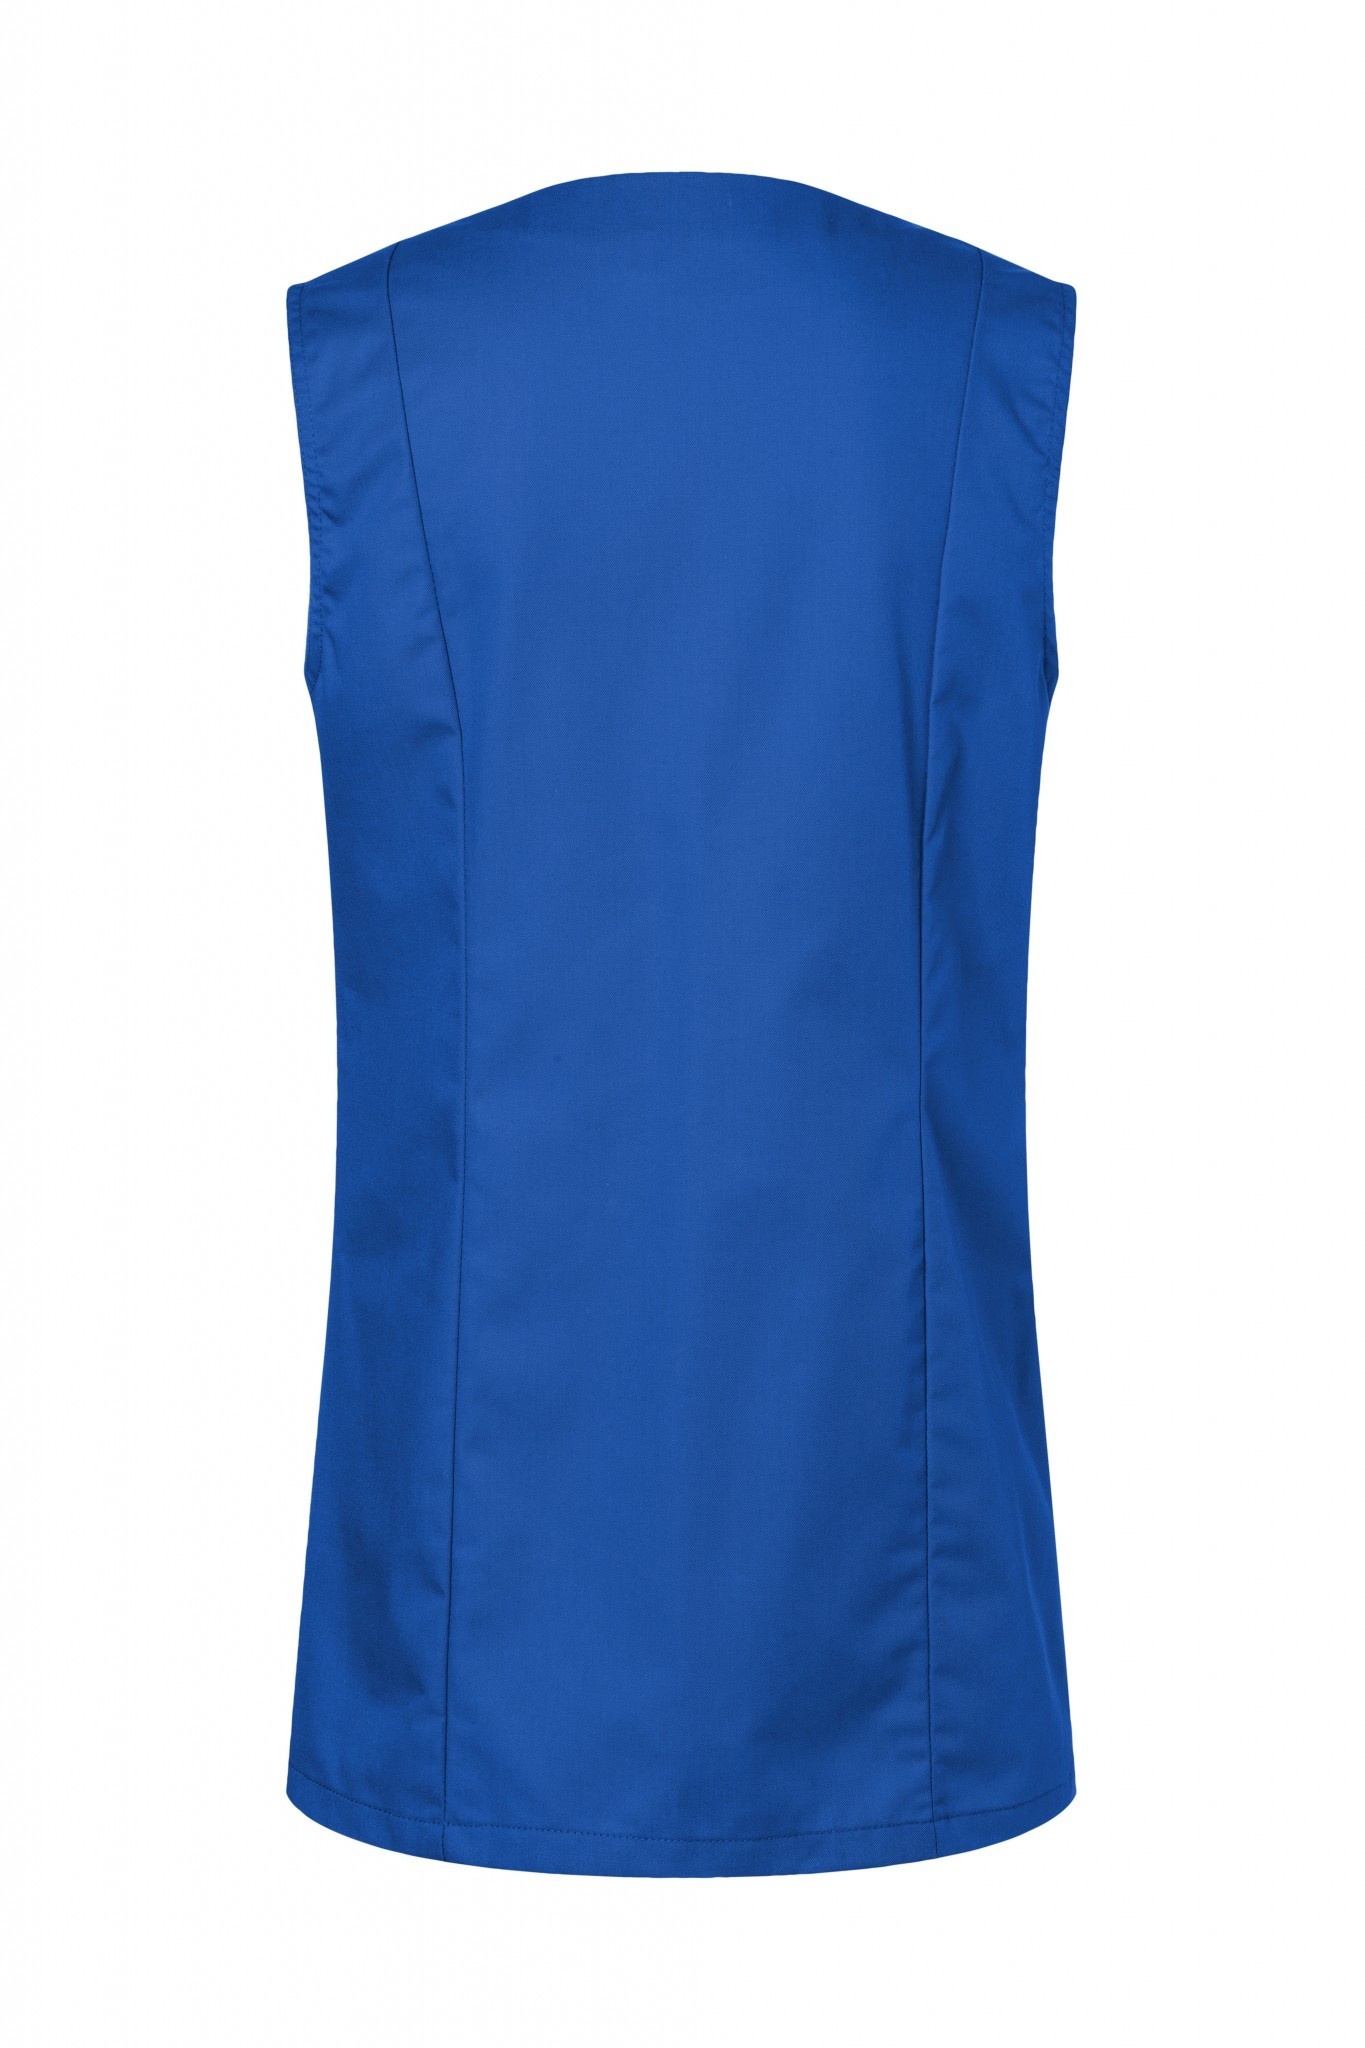 Kasack Sara | Blau | 65% Polyester / 35% Baumwolle | Erhältlich in 12 Größen